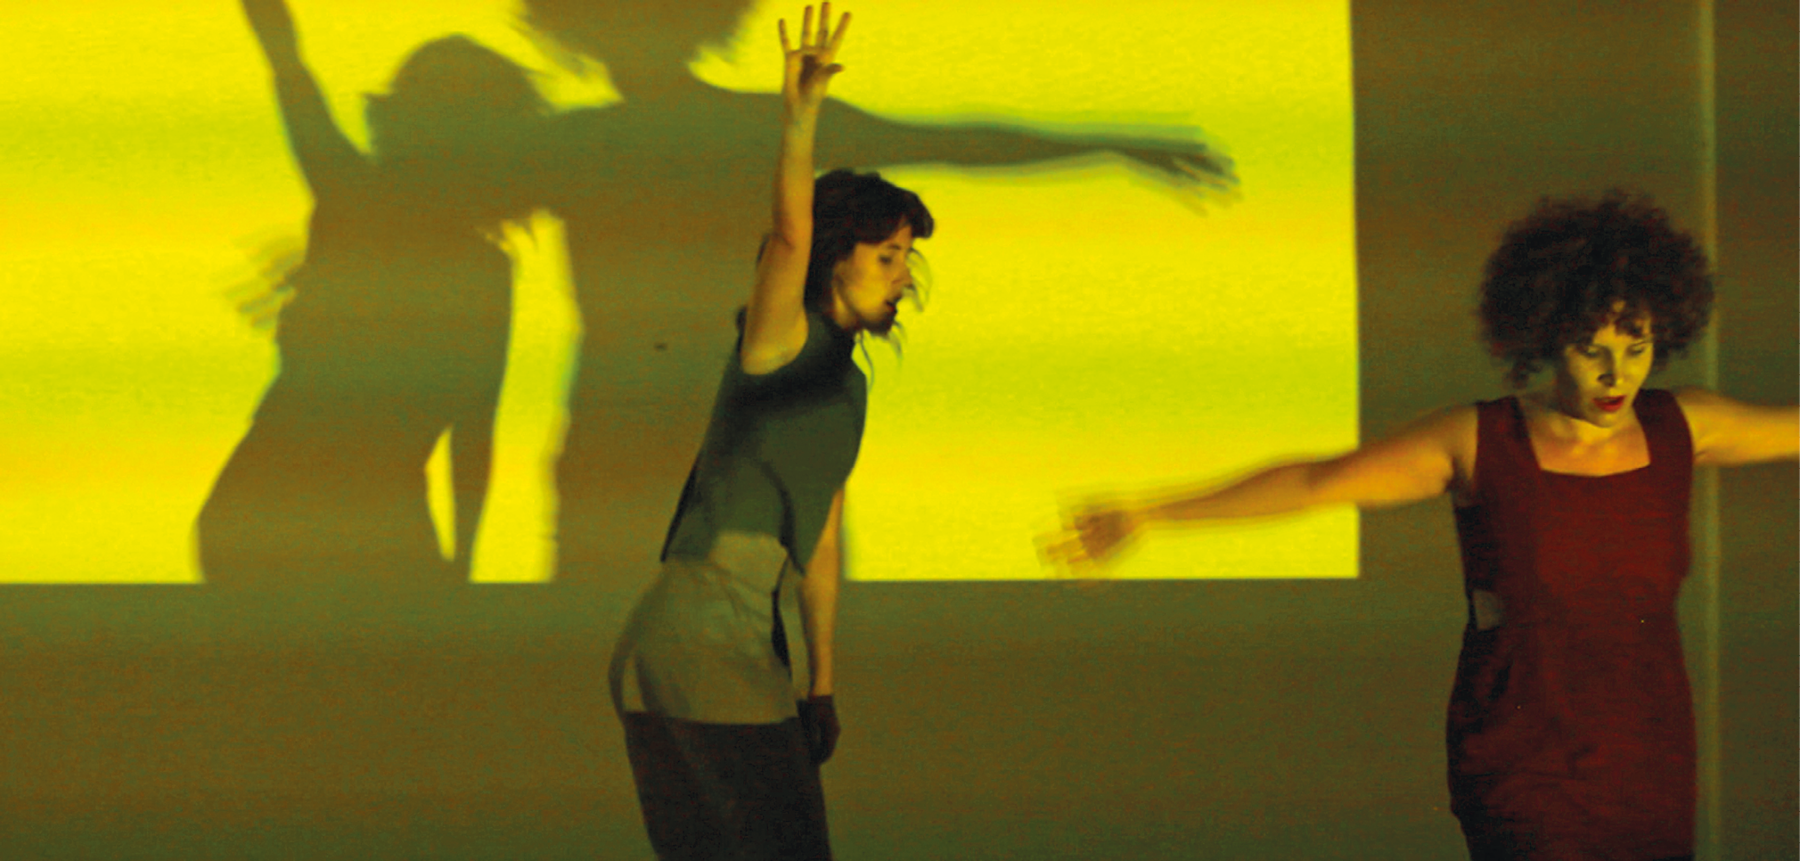 Fotografia. Duas mulheres dançam em frente a um telão no qual é projetado uma luz em tons de verde-claro e amarelo. Elas vestem vestidos escuros e estão em movimento, com os braços abertos. Com a luz, suas sombras são projetadas no telão.